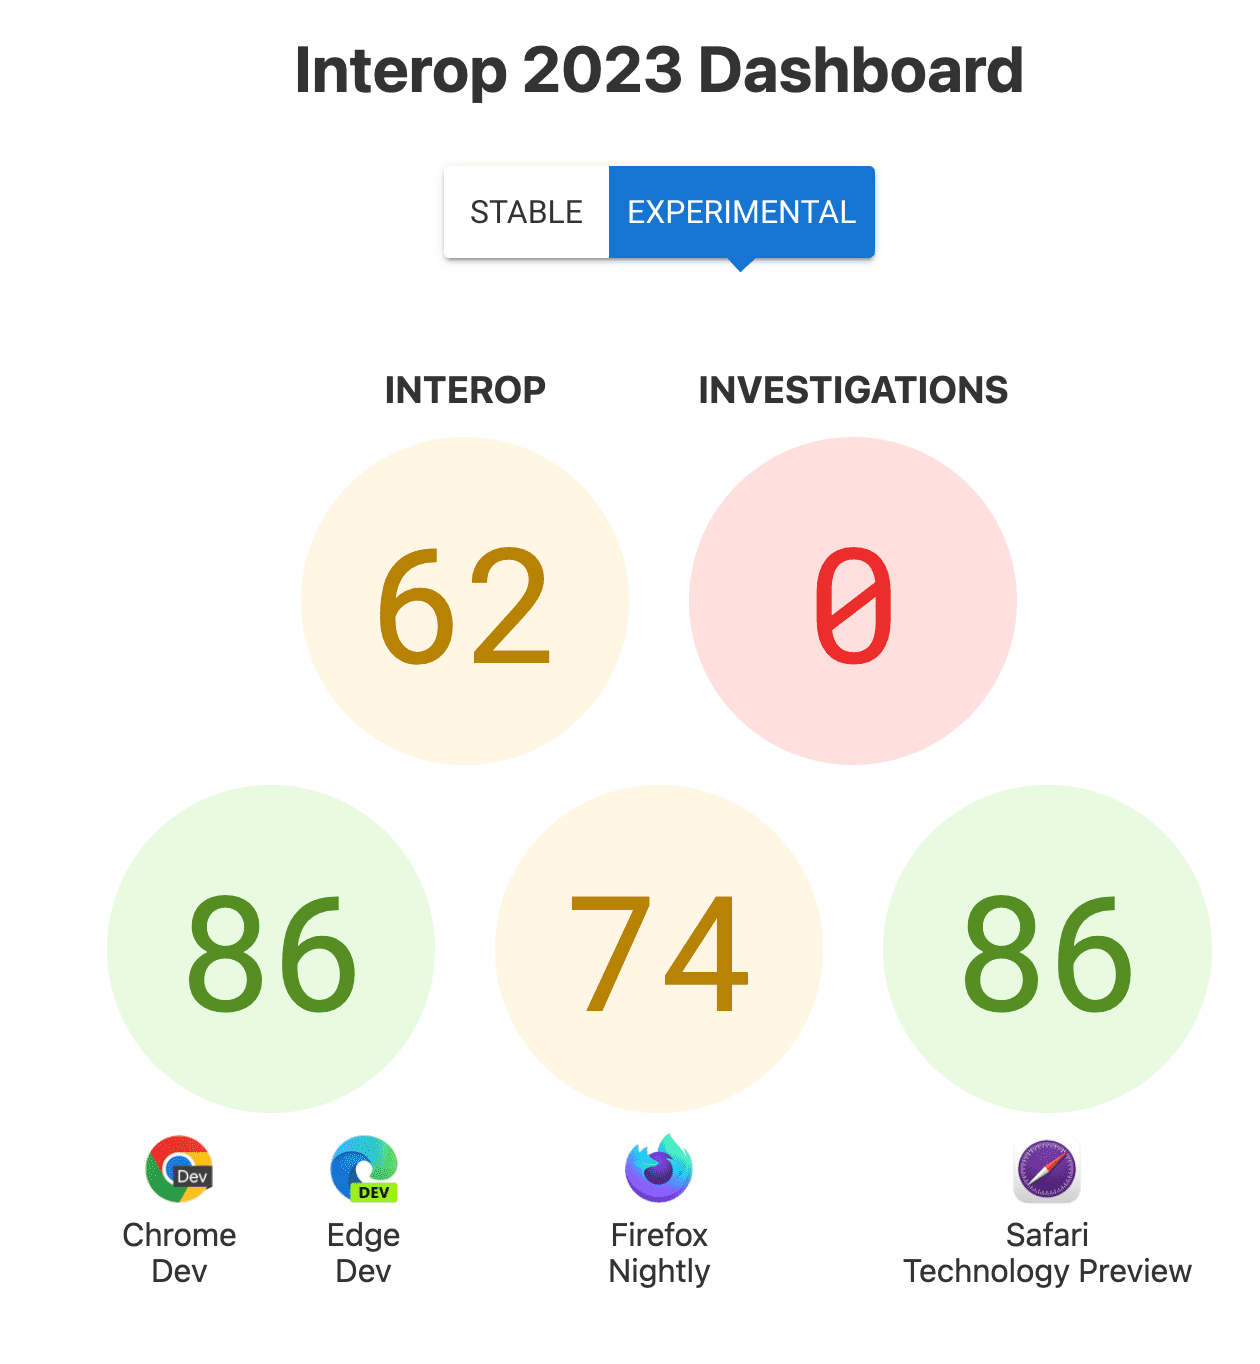 Las puntuaciones de interoperabilidad en general: 62, las investigaciones: 0 y las puntuaciones por navegador: 86 para Chrome y Edge, 74 para Firefox, 86 para la vista previa de la tecnología para Safari.